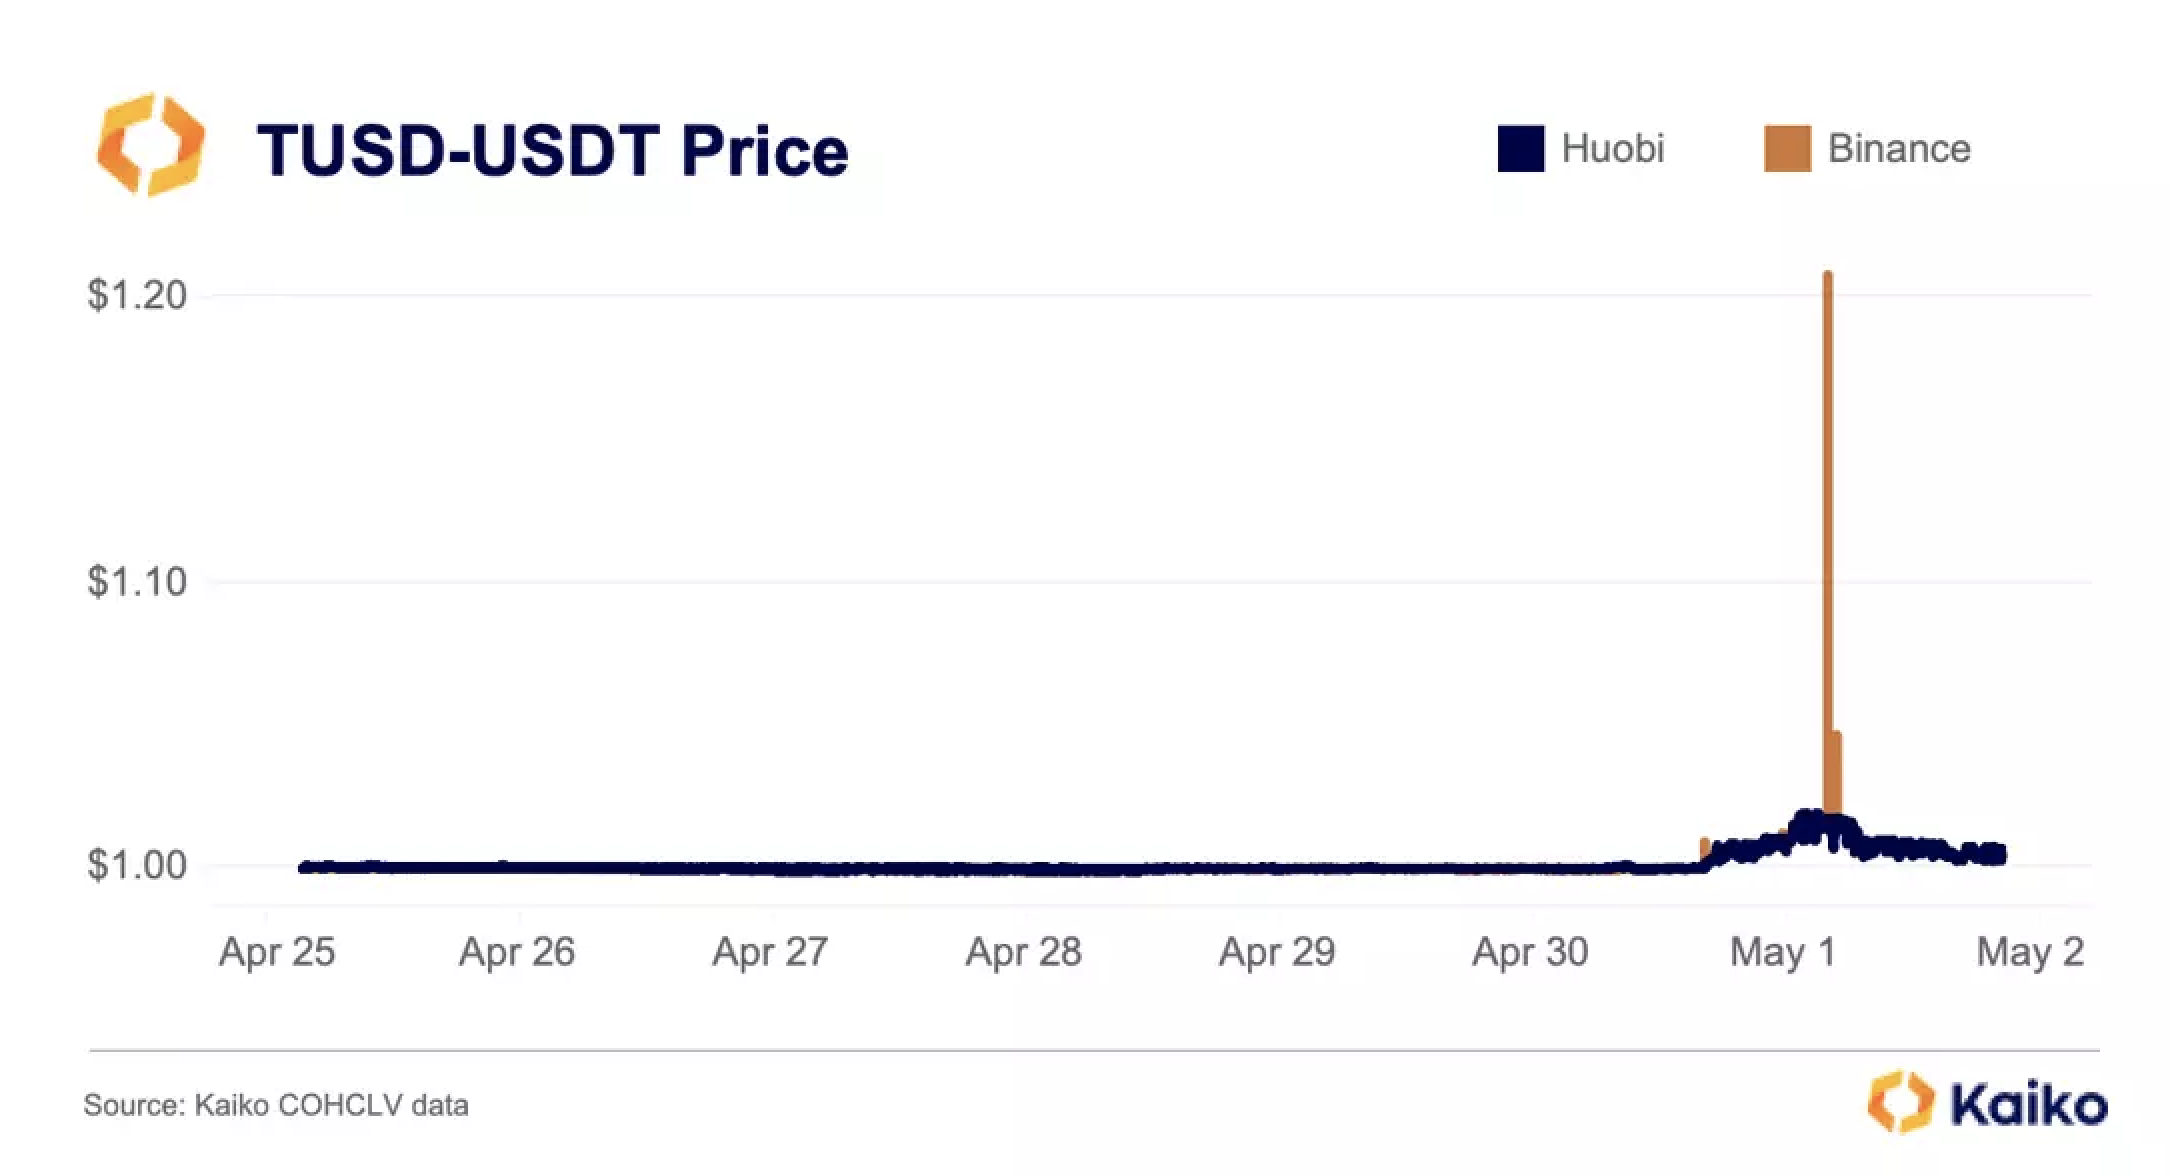 Chênh lệch giá giữa TUSD và USDT trên Binance. Nguồn: Kaiko